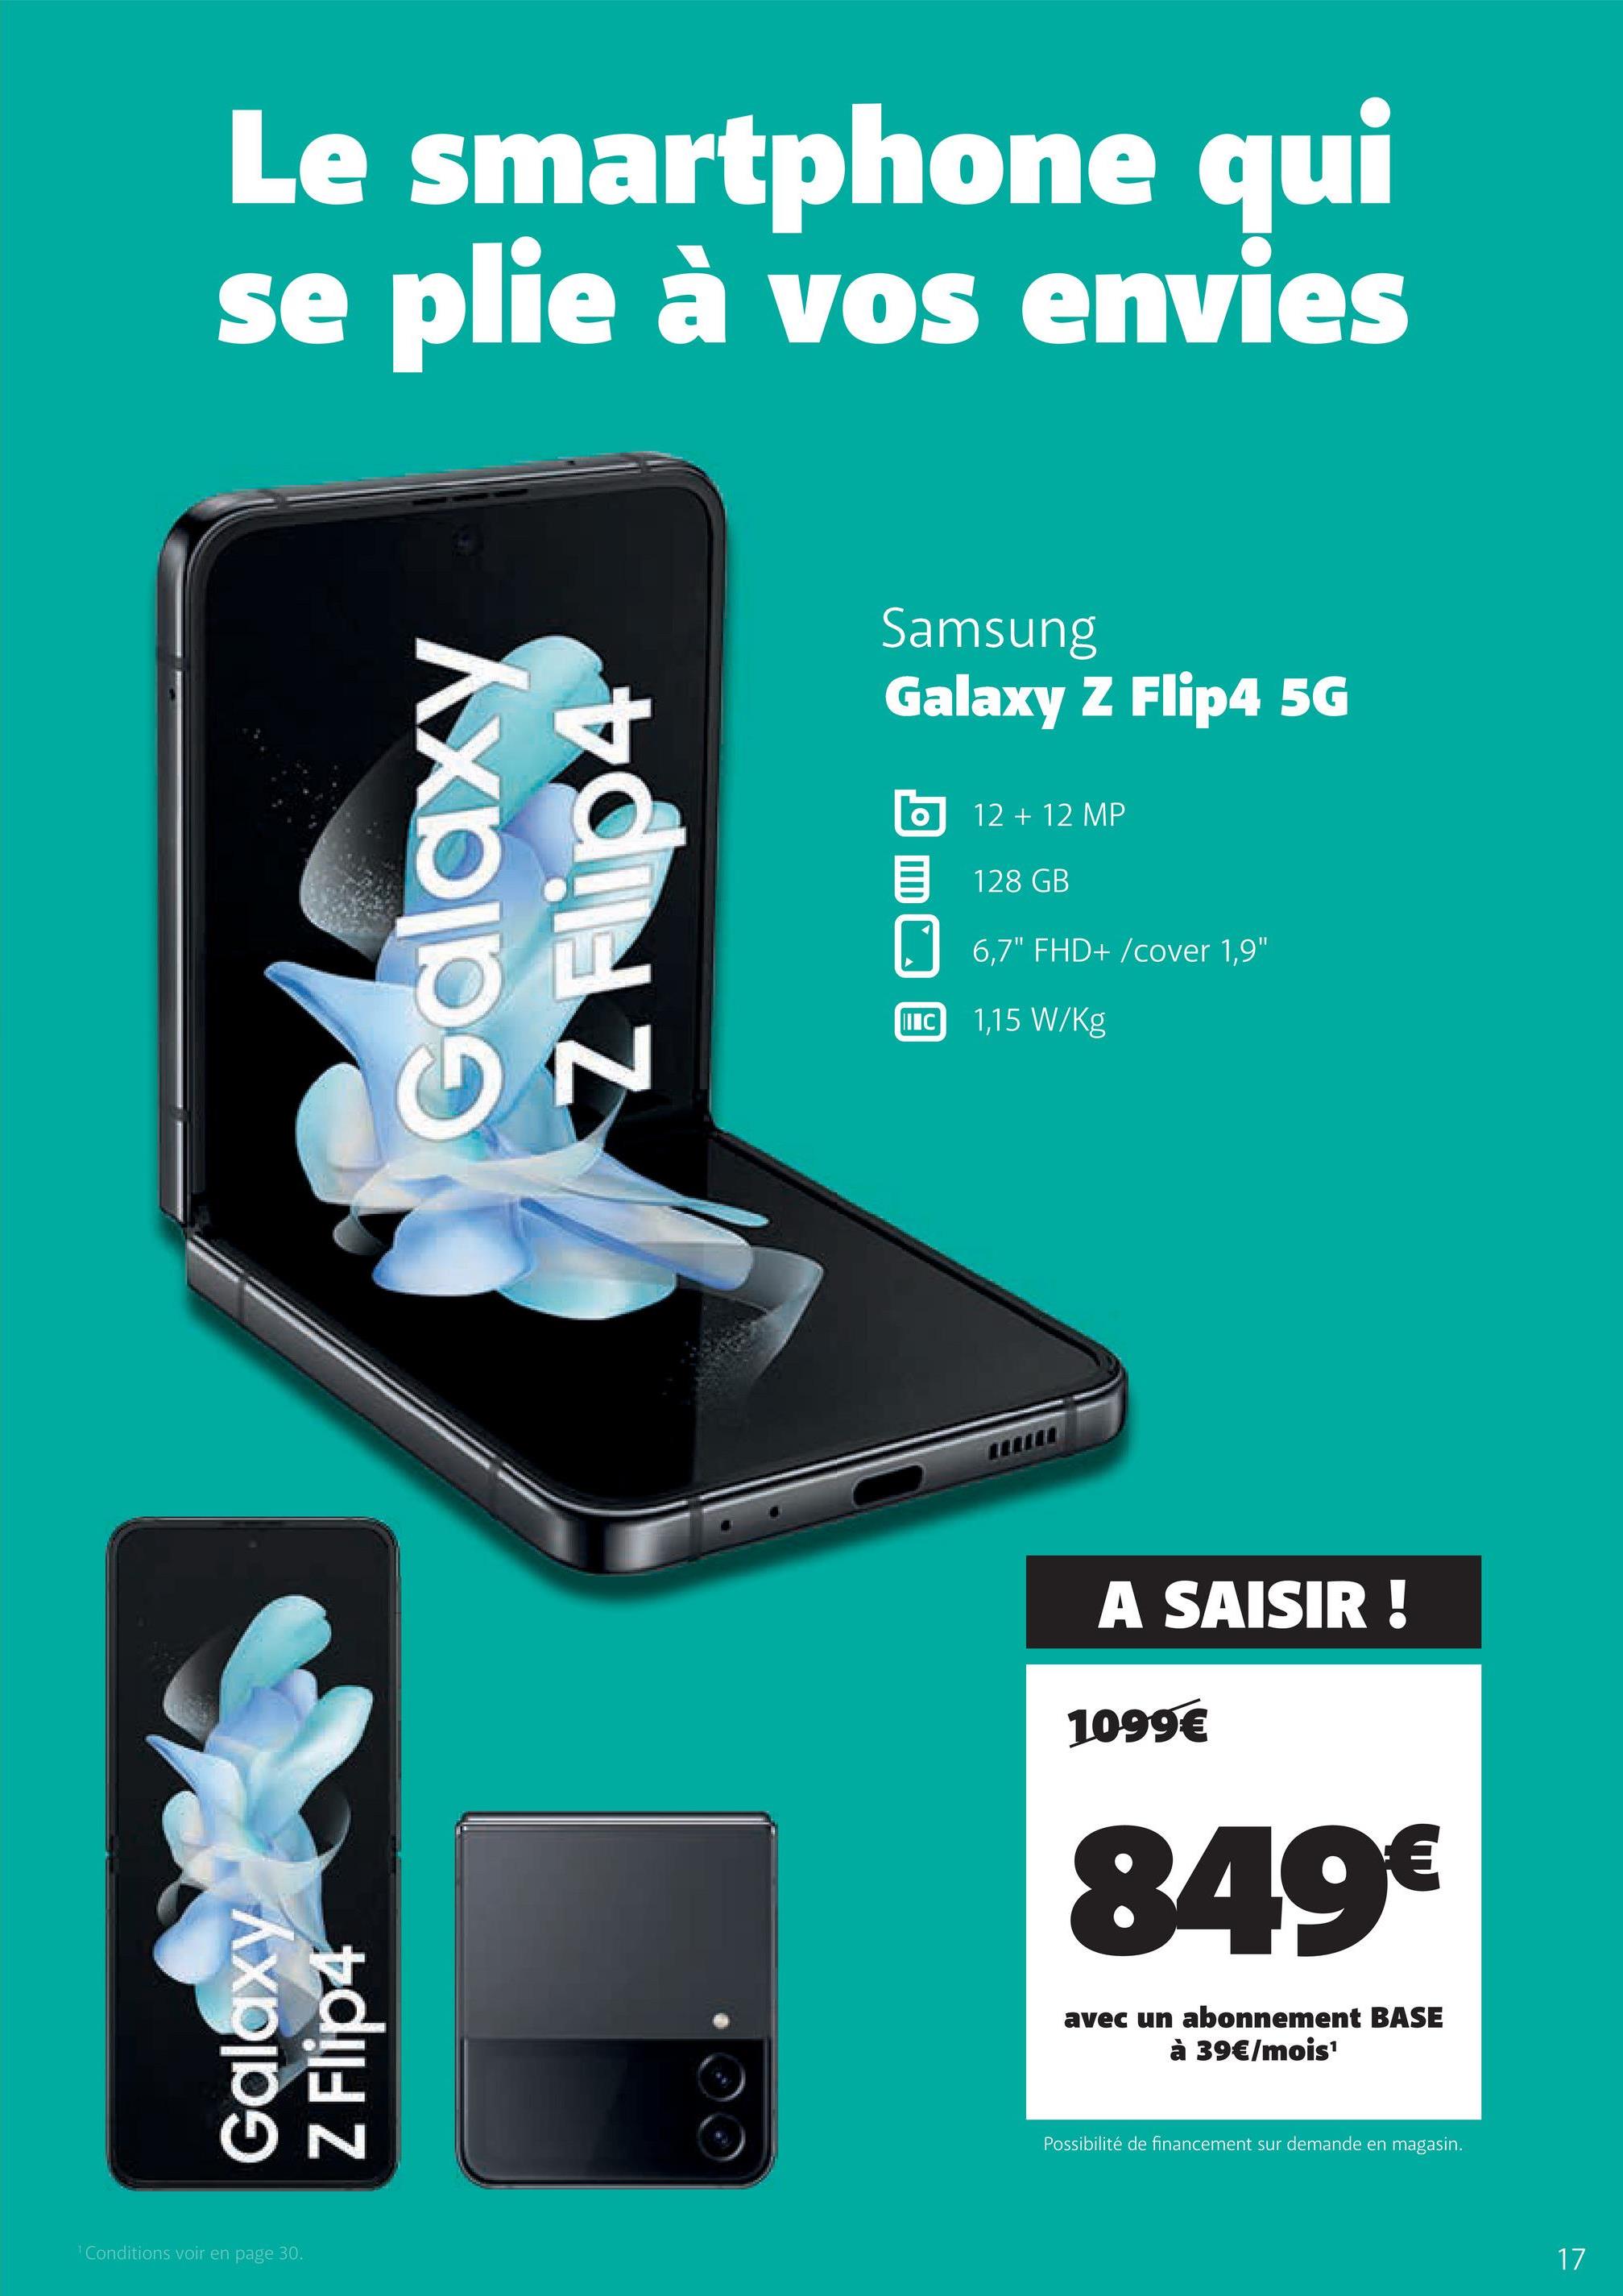 Le smartphone qui
se plie à vos envies
Galaxy
Z Flip4
¹ Conditions voir en page 30.
Galaxy
N
Samsung
Galaxy Z Flip4 5G
IIIC
12 + 12 MP
128 GB
6,7" FHD+/cover 1,9"
1,15 W/kg
A SAISIR!
1099€
849€
avec un abonnement BASE
à 39€/mois¹
Possibilité de financement sur demande en magasin.
17